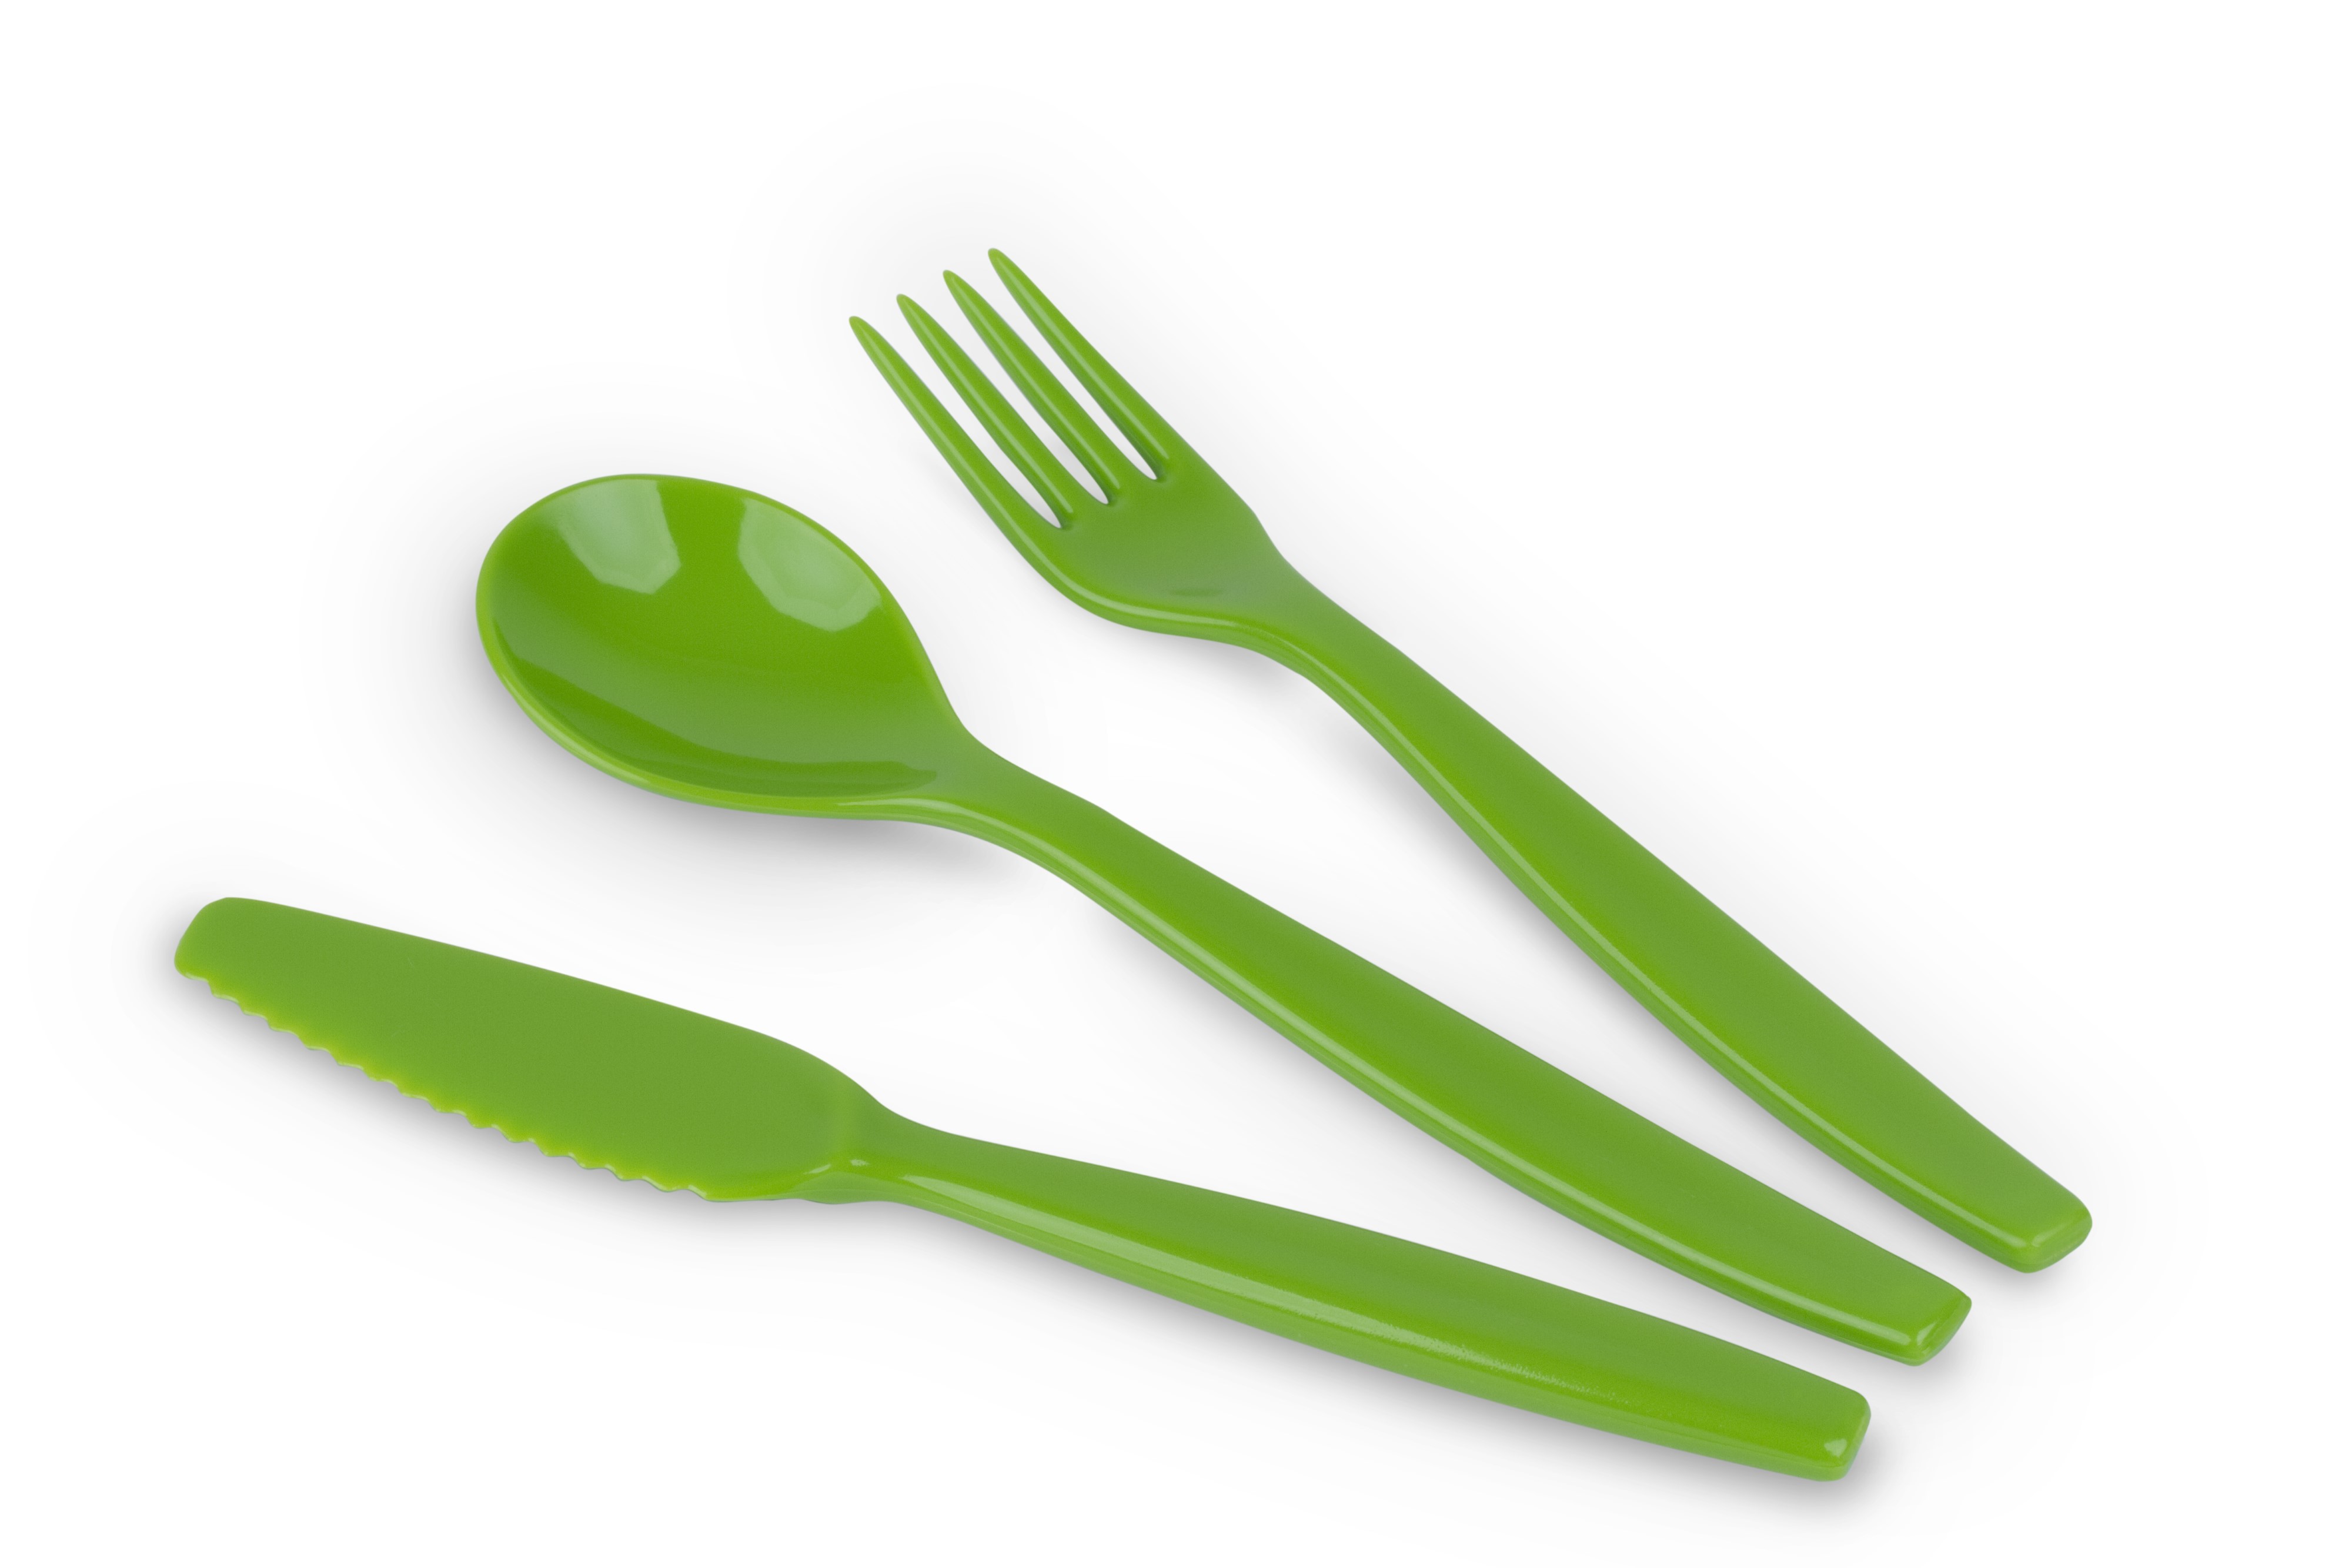 Kinderzeug Besteck-Set BRISE, hellgrün, 3-teilig: Messer, Gabel, Löffel, spülmaschinen- geeignet. Länge ca. 16,5 cm, Gewicht 31 g